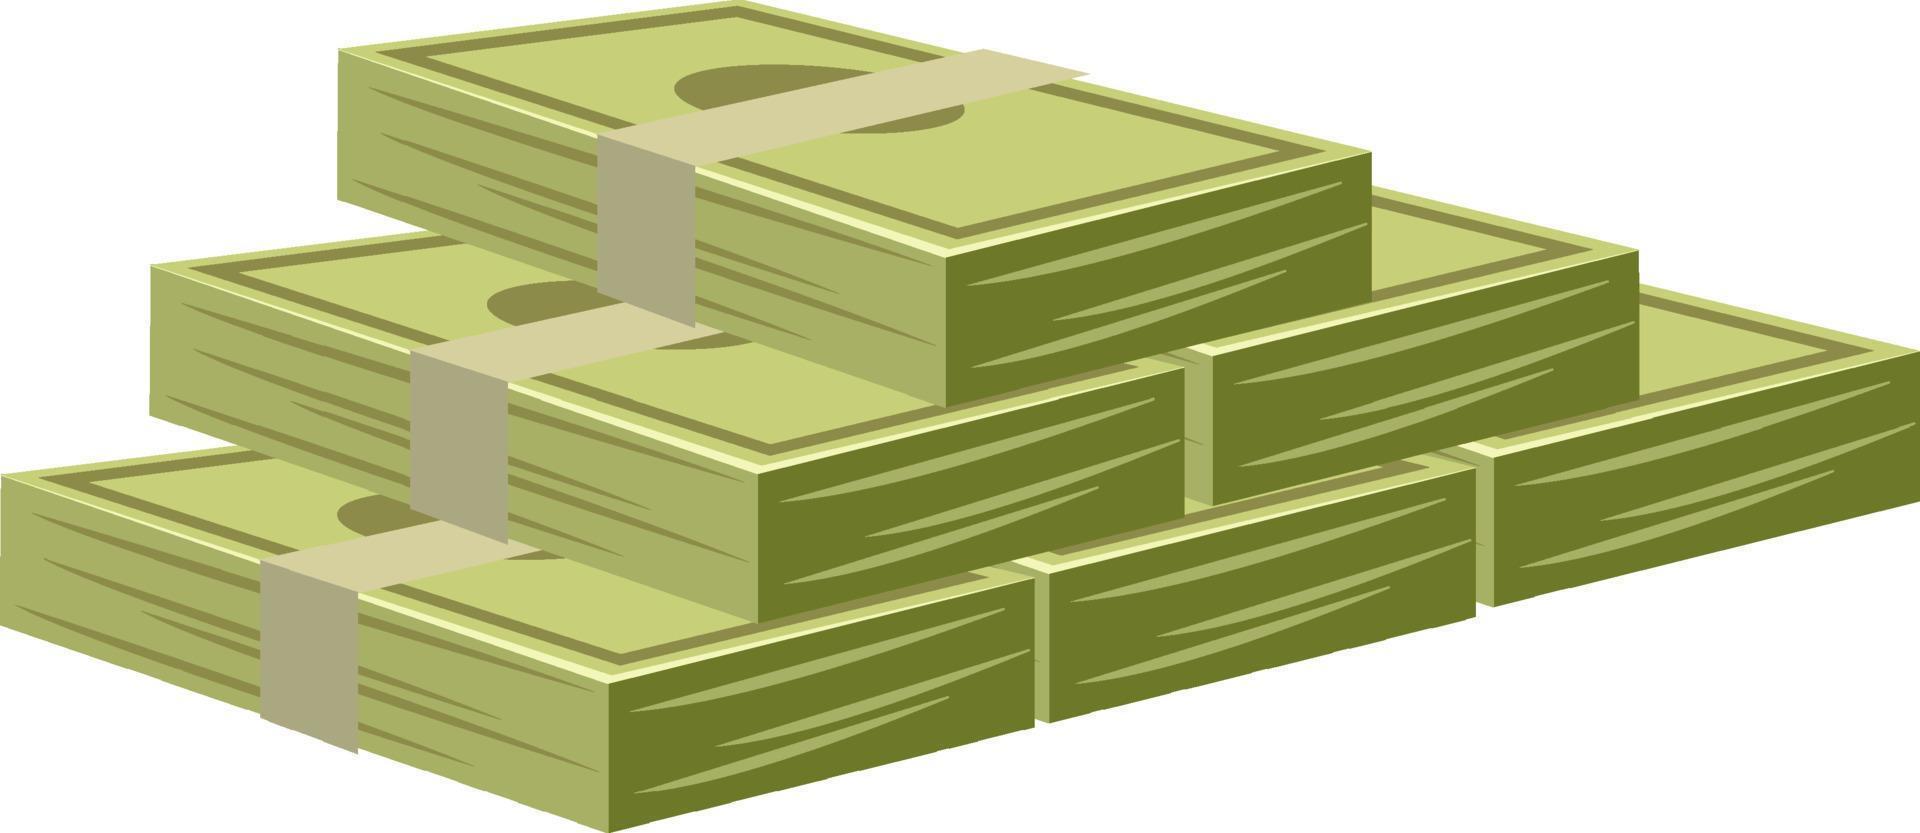 pila de billetes de dinero en estilo de dibujos animados vector